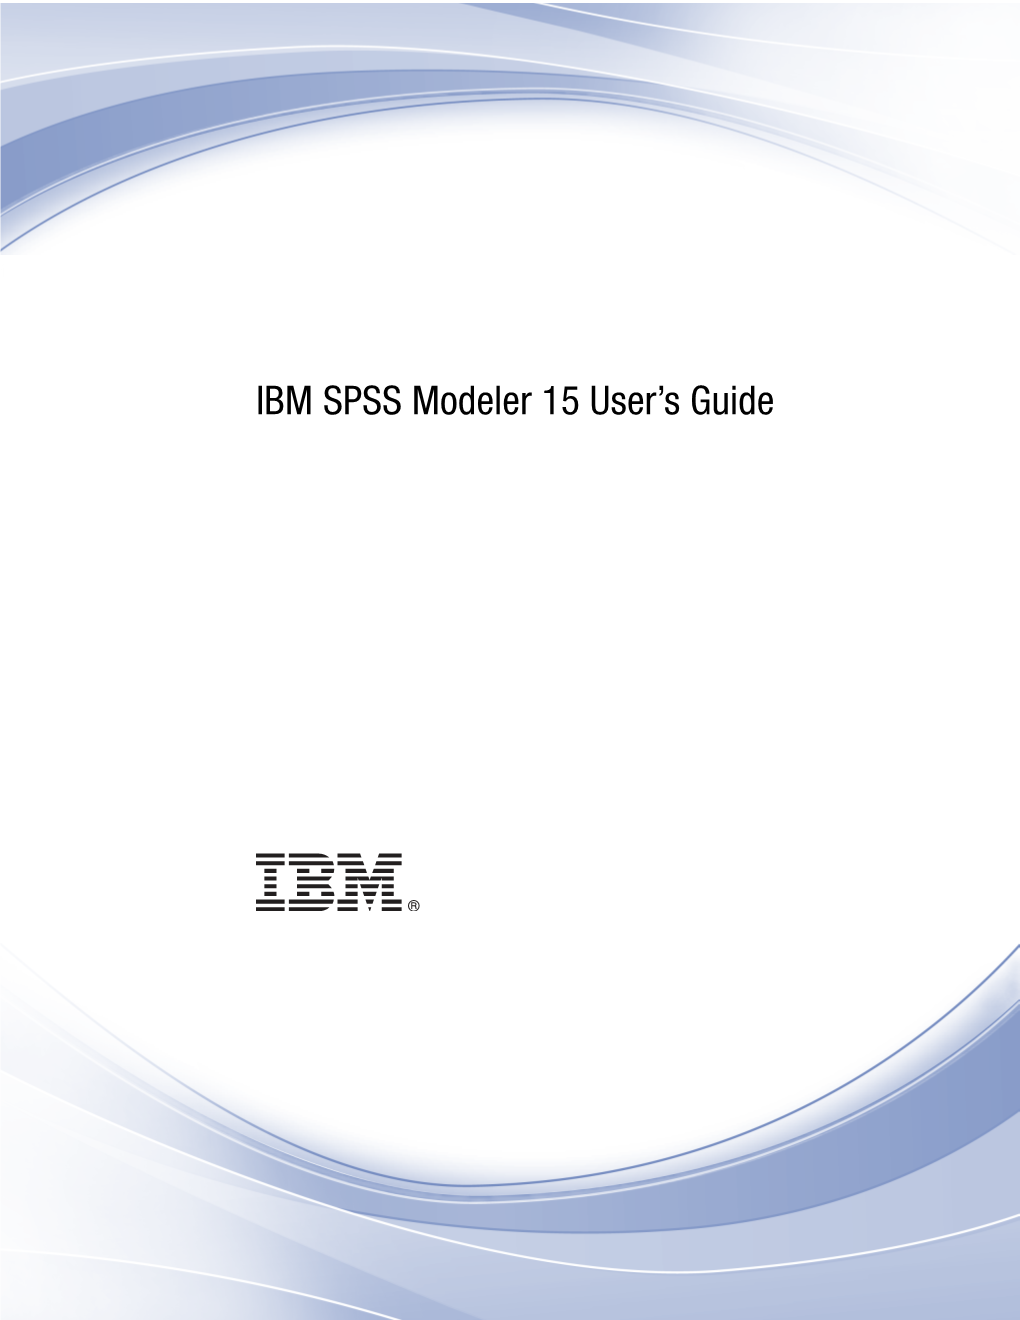 IBM SPSS Modeler 15 User's Guide